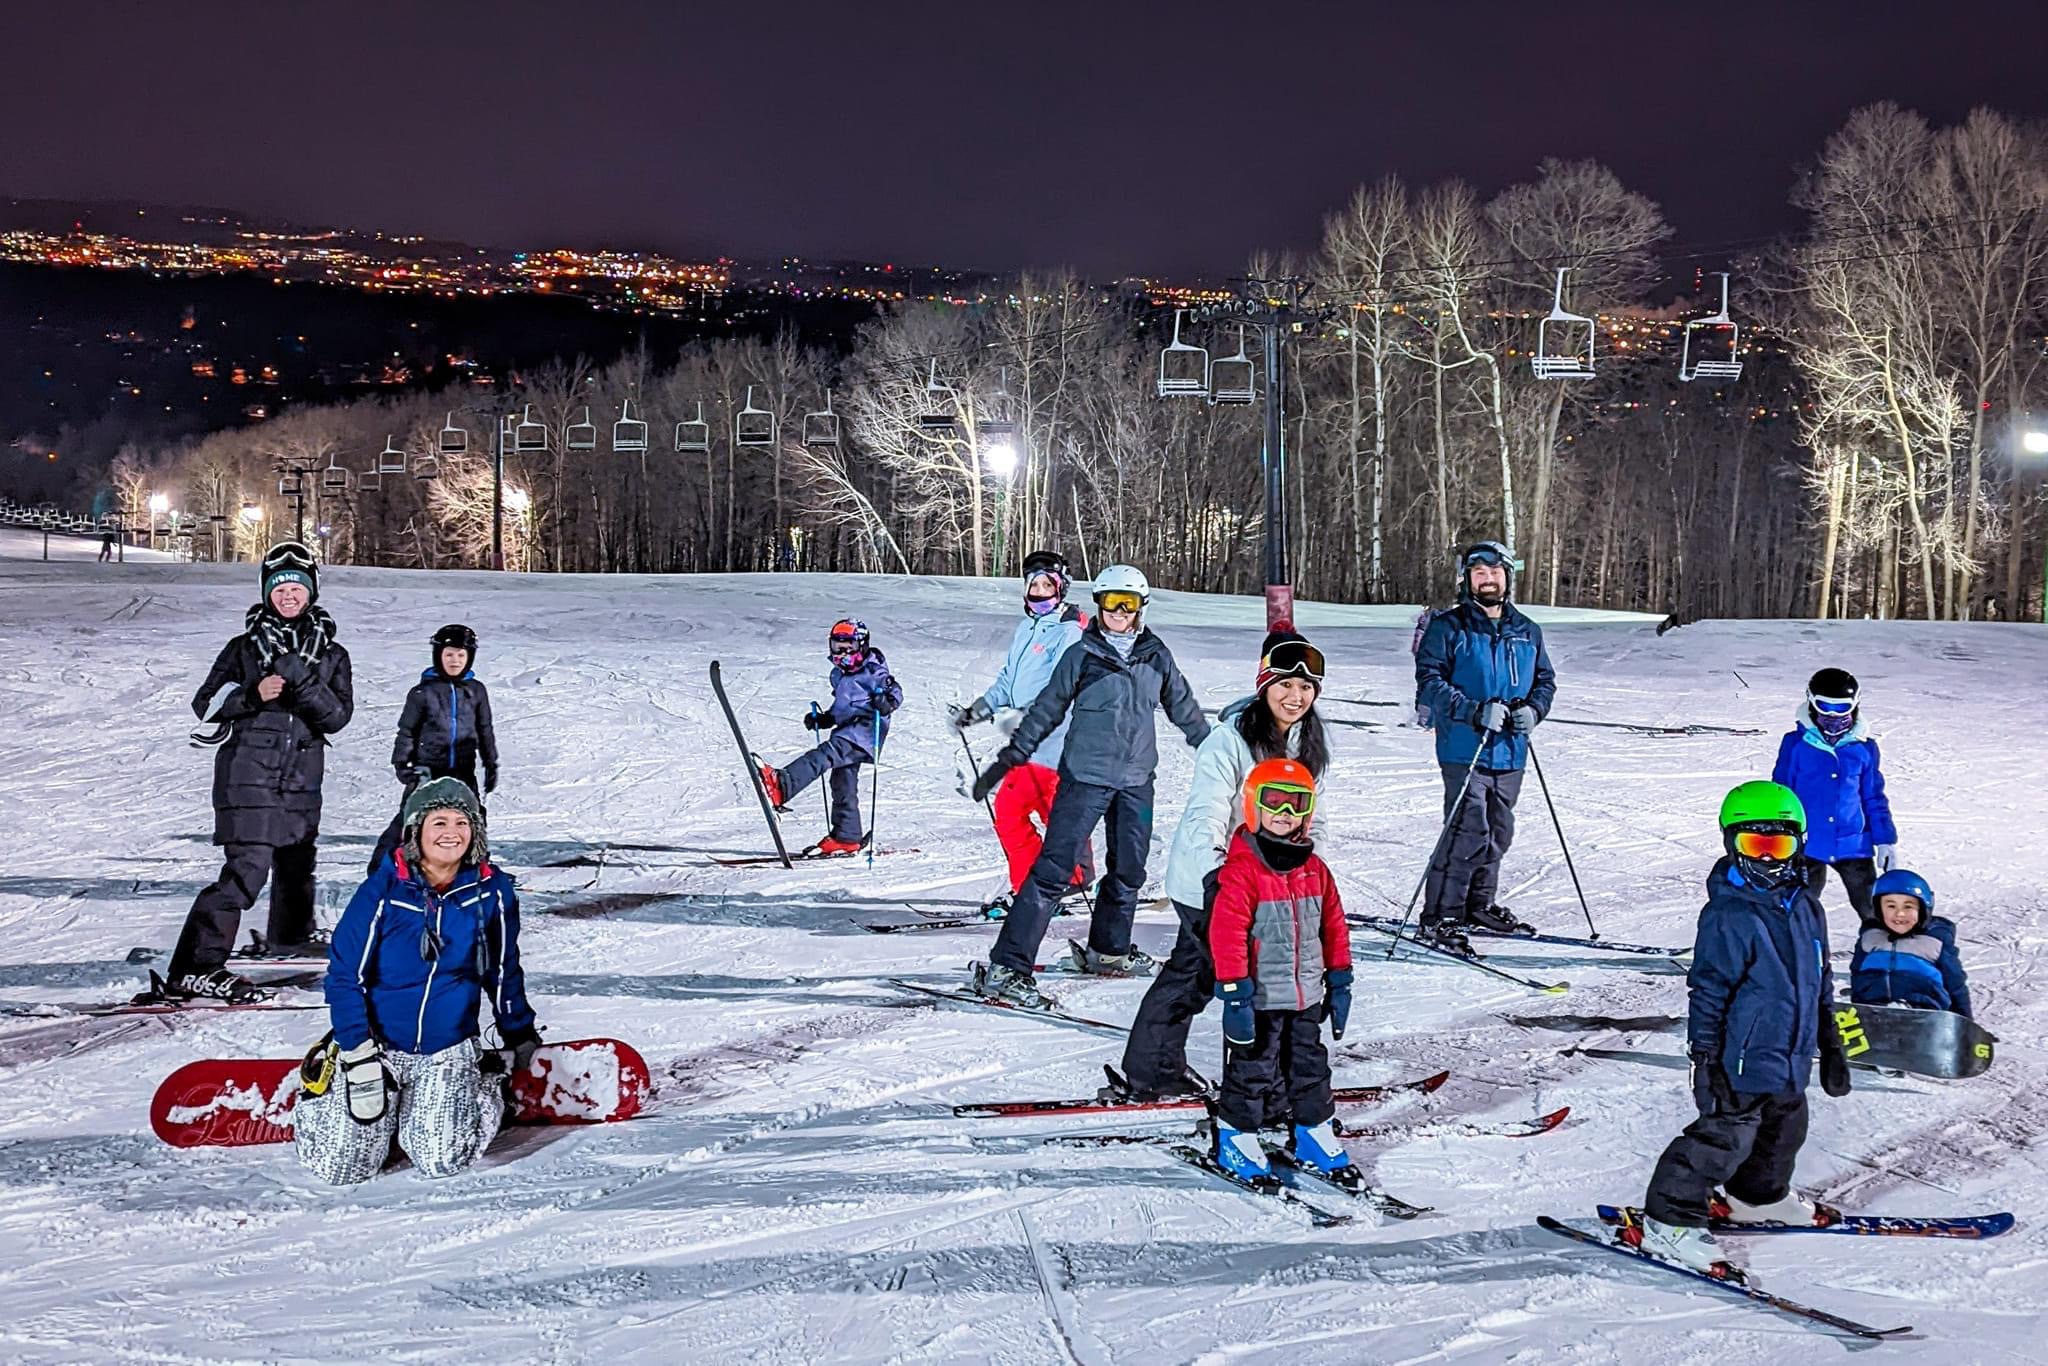 Youth Ski instruction group